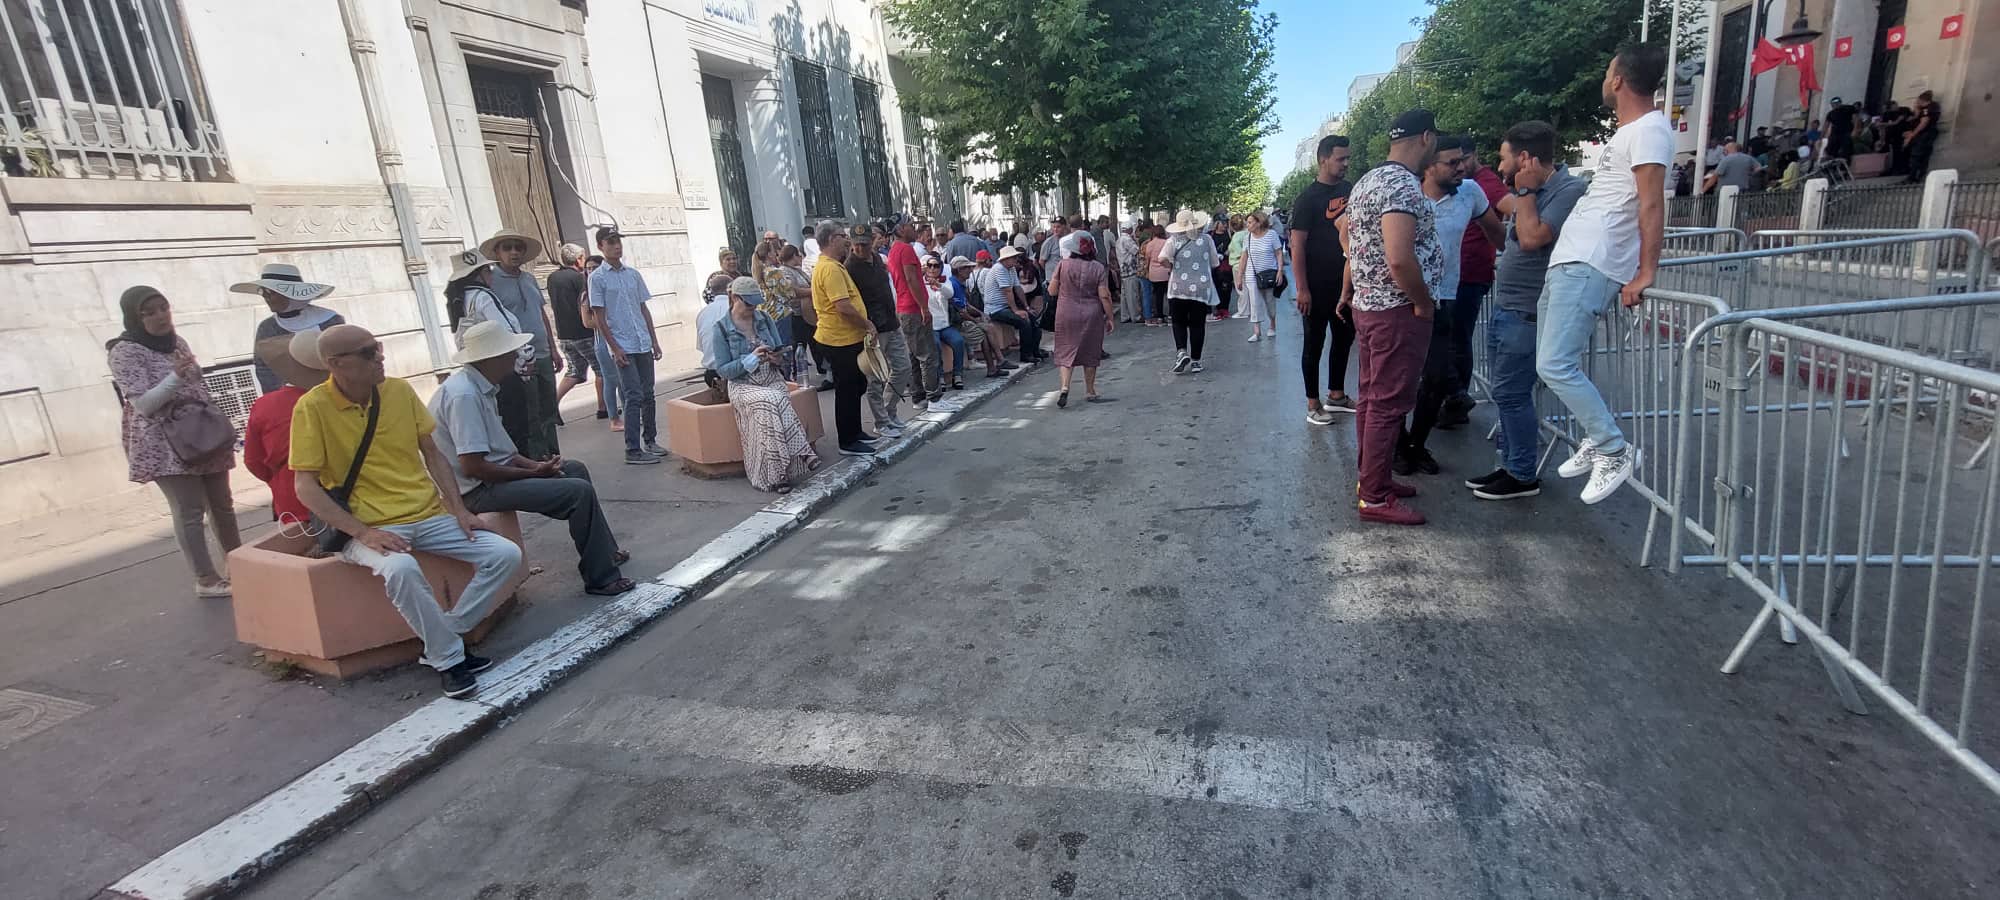 Les sympathisants du PDL se rassemblent devant le siège du gouvernorat de Tunis [Photos]